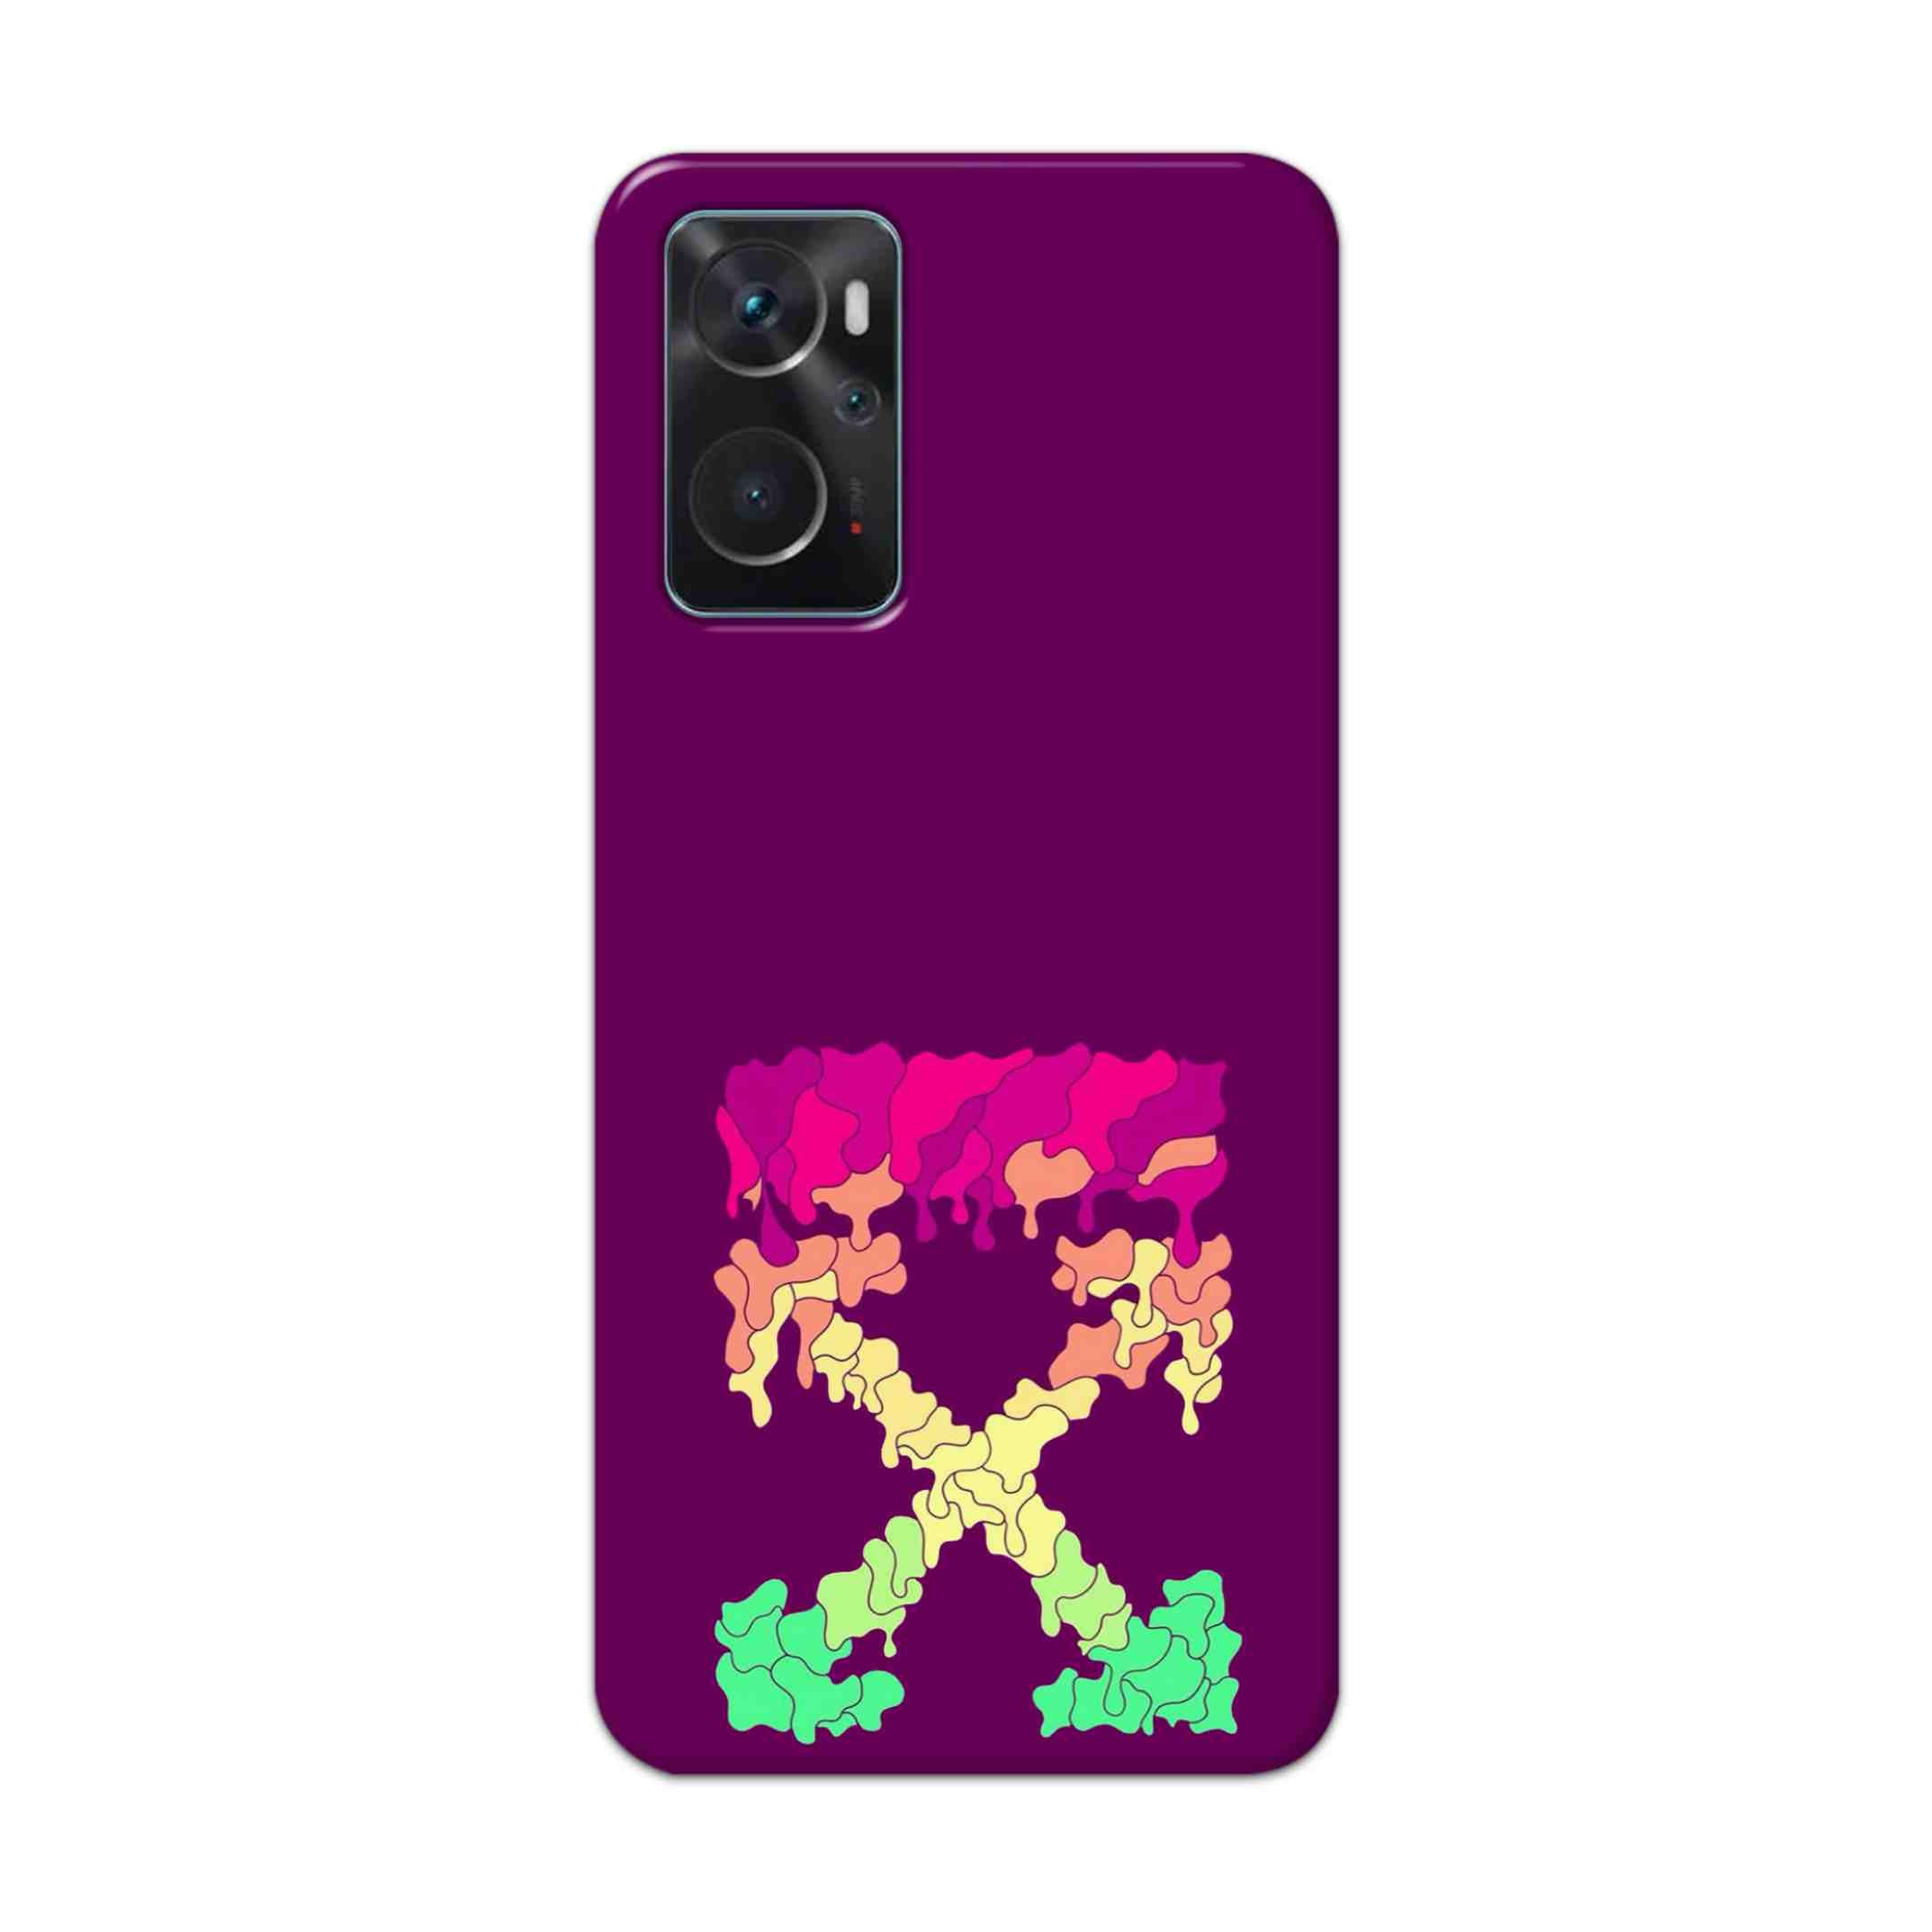 Buy X.O Hard Back Mobile Phone Case Cover For Oppo K10 Online